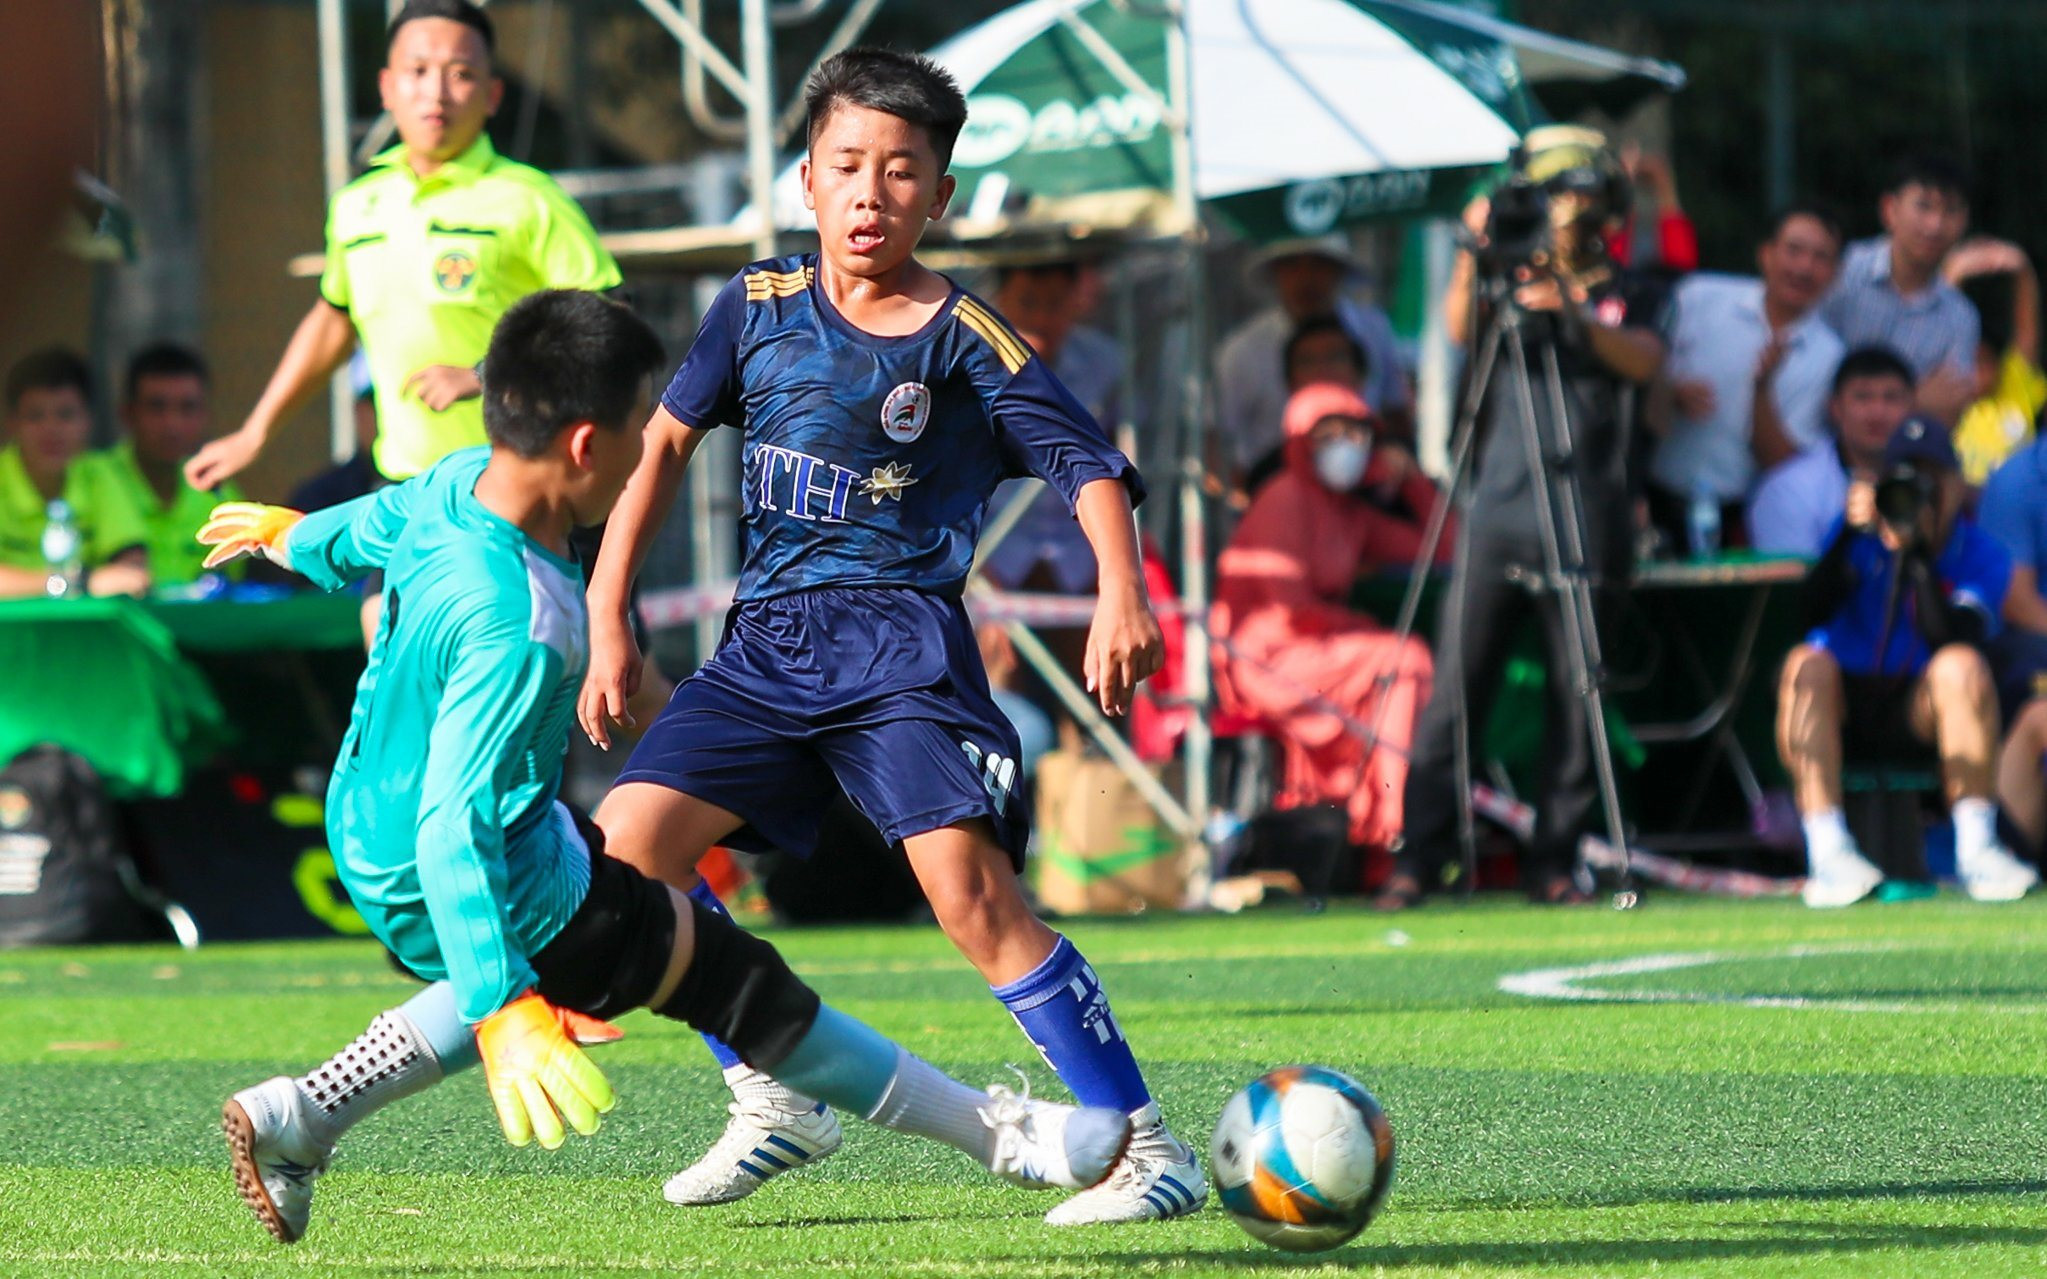 Highlight Bán kết Thiếu niên Quỳnh Lưu - Thiếu niên Quỳ Hợp: 2-2 (Penalty 2-0) 